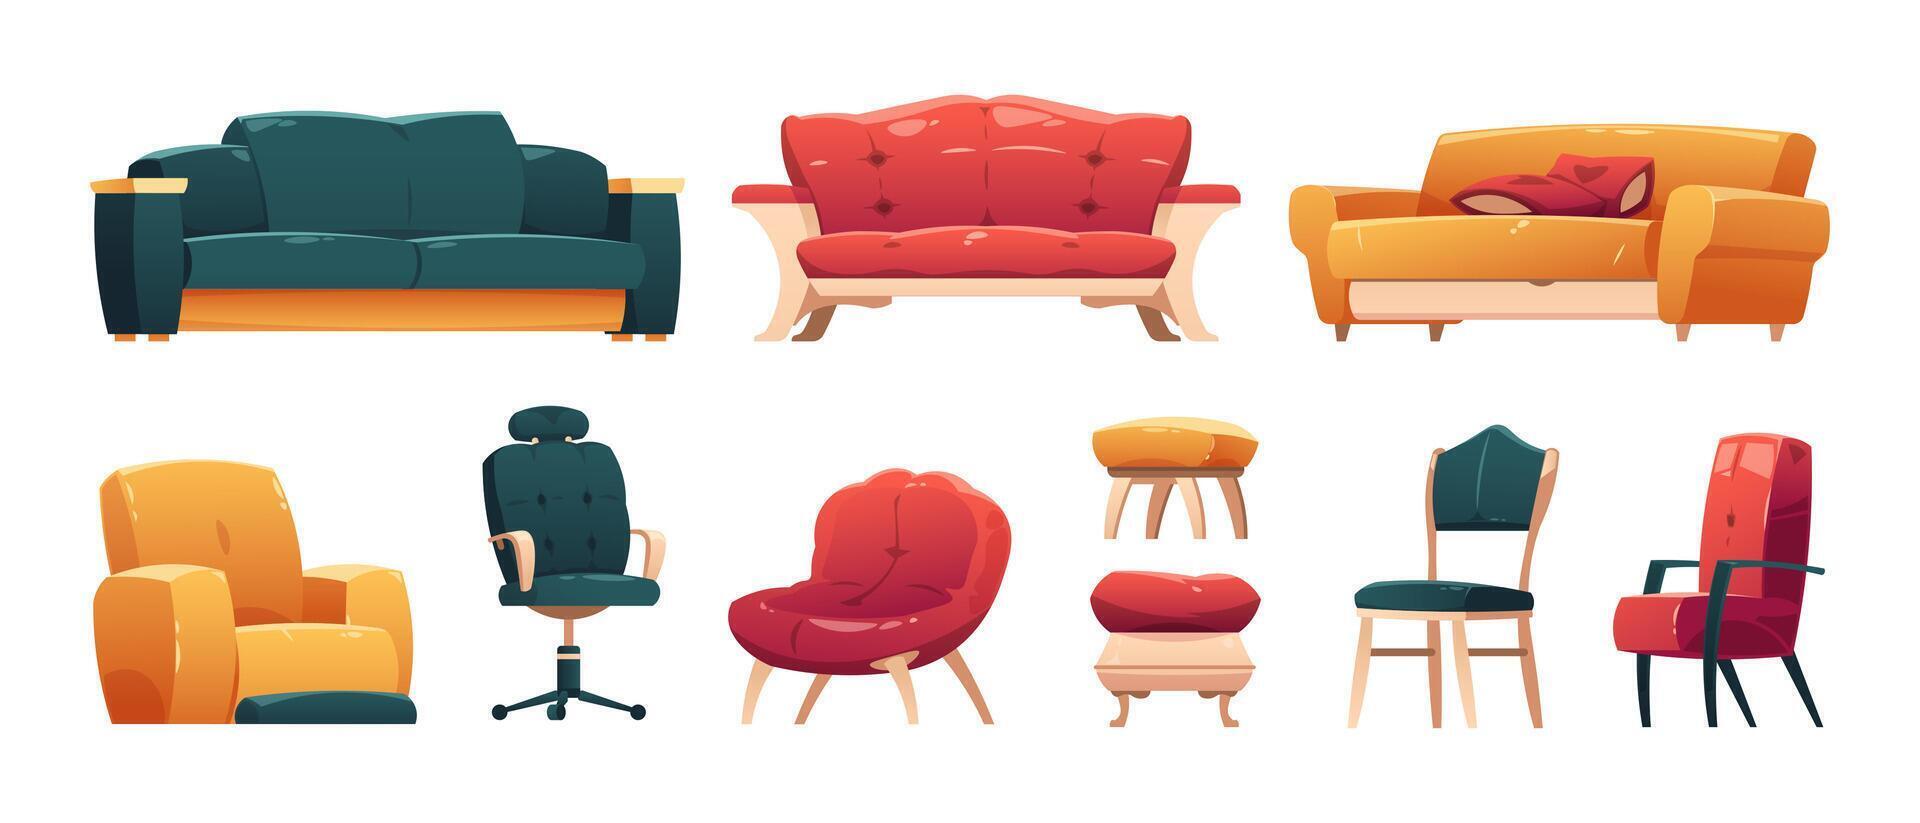 branché canapés chaises les fauteuils. dessin animé confortable meubles pour vivant pièce intérieur, moderne canapé et fauteuil avec oreillers. isolé ensemble vecteur